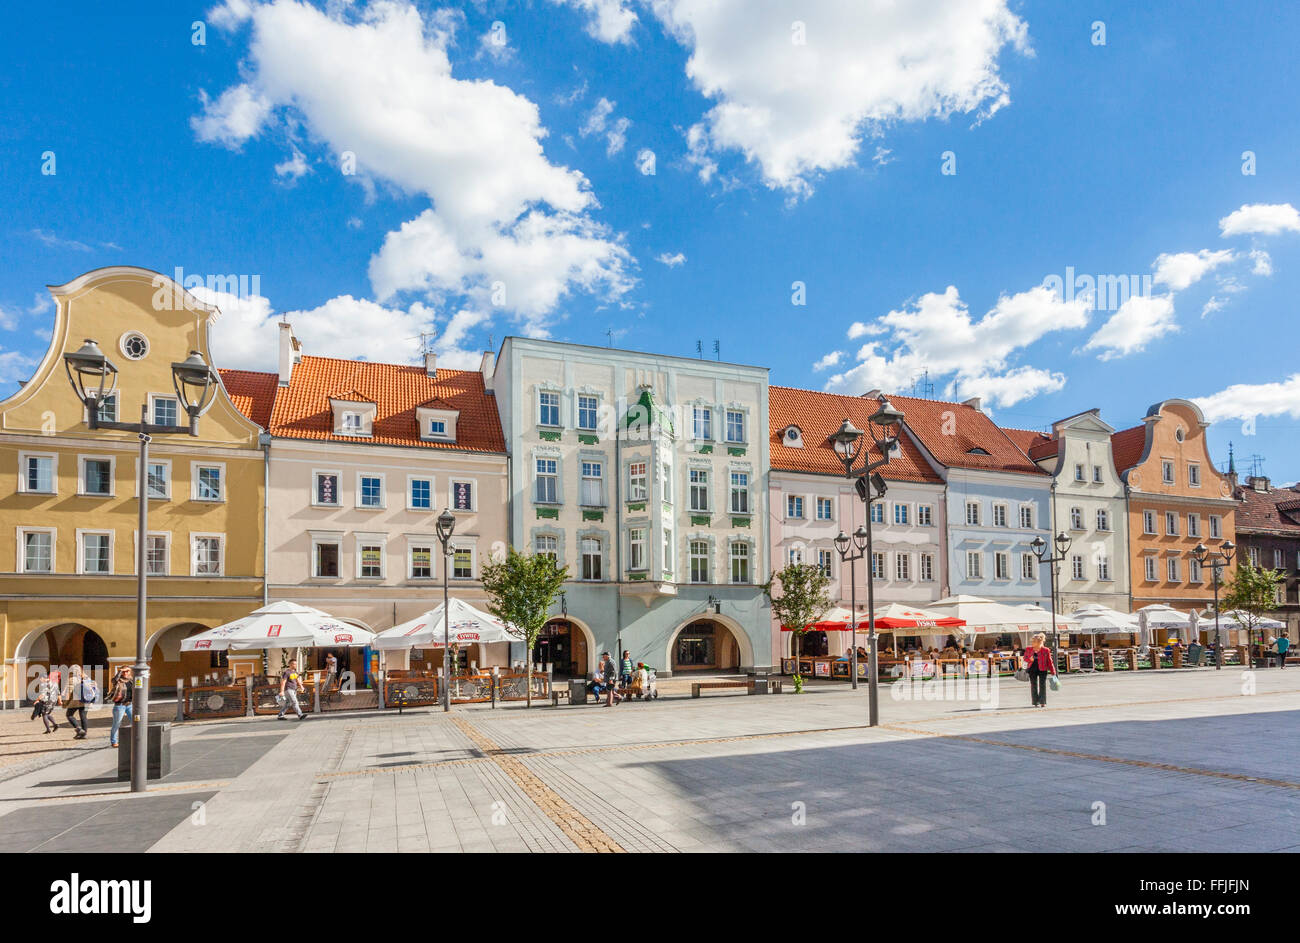 Poland, Upper Silesia, Gliwice (Gleiwitz), view of Rynek, the Market Square Stock Photo